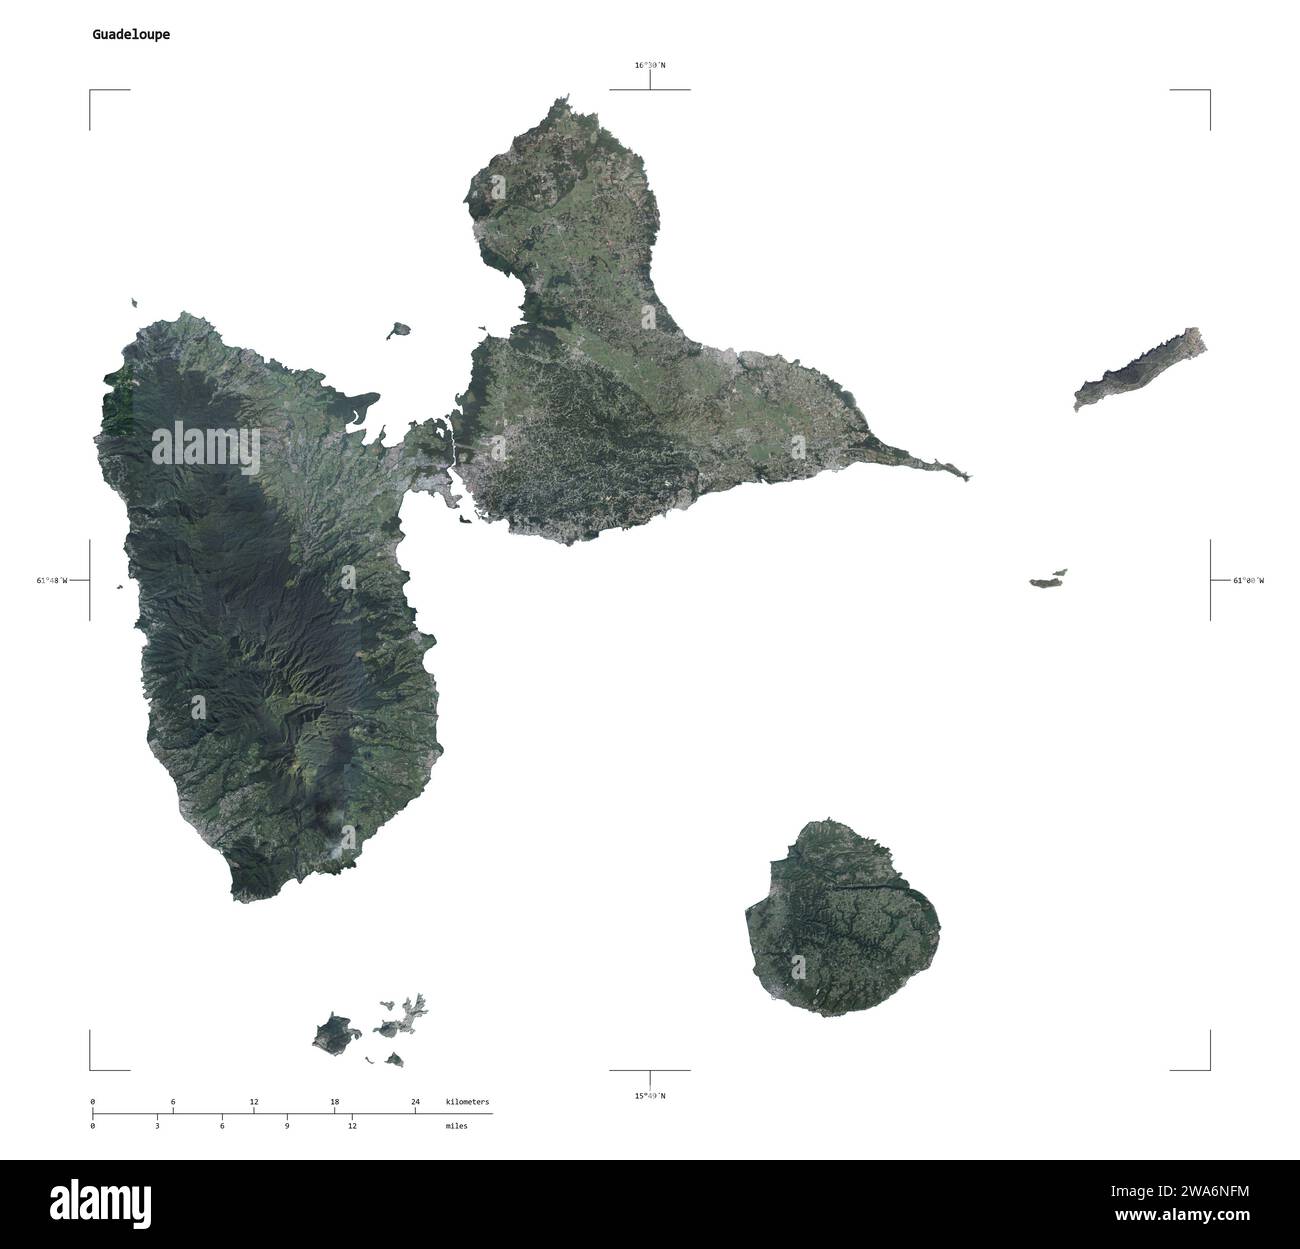 Forme d'une carte satellite à haute résolution de la Guadeloupe, avec échelle de distance et coordonnées de la frontière de la carte, isolée sur blanc Banque D'Images